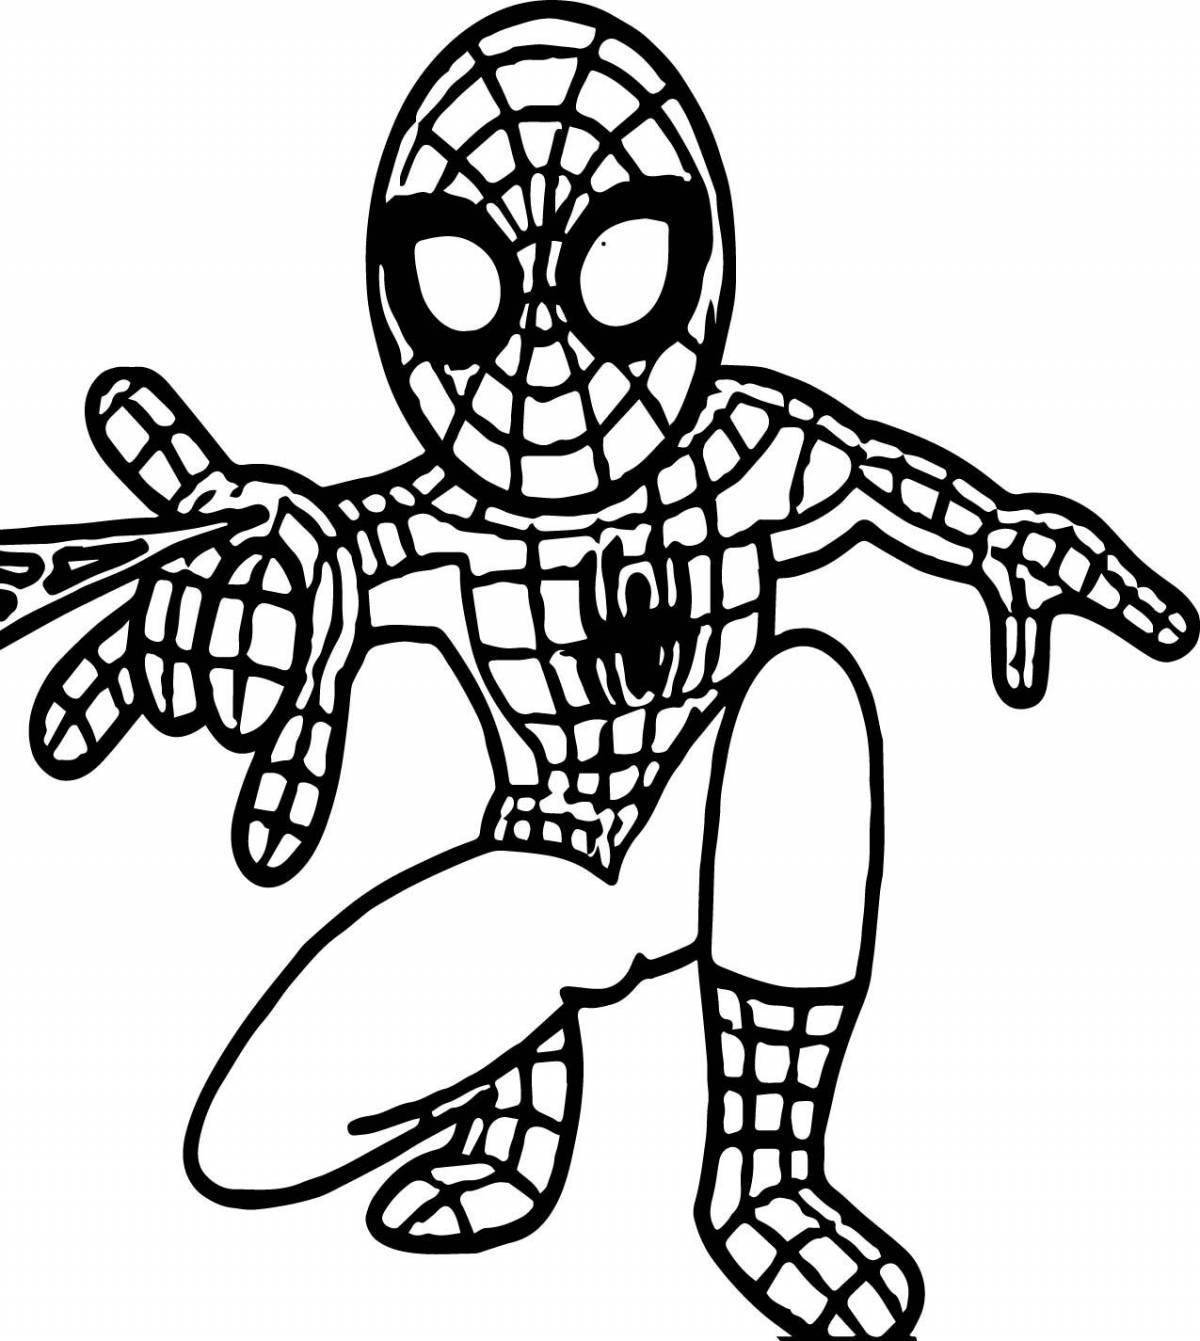 Лего человек паук раскраска